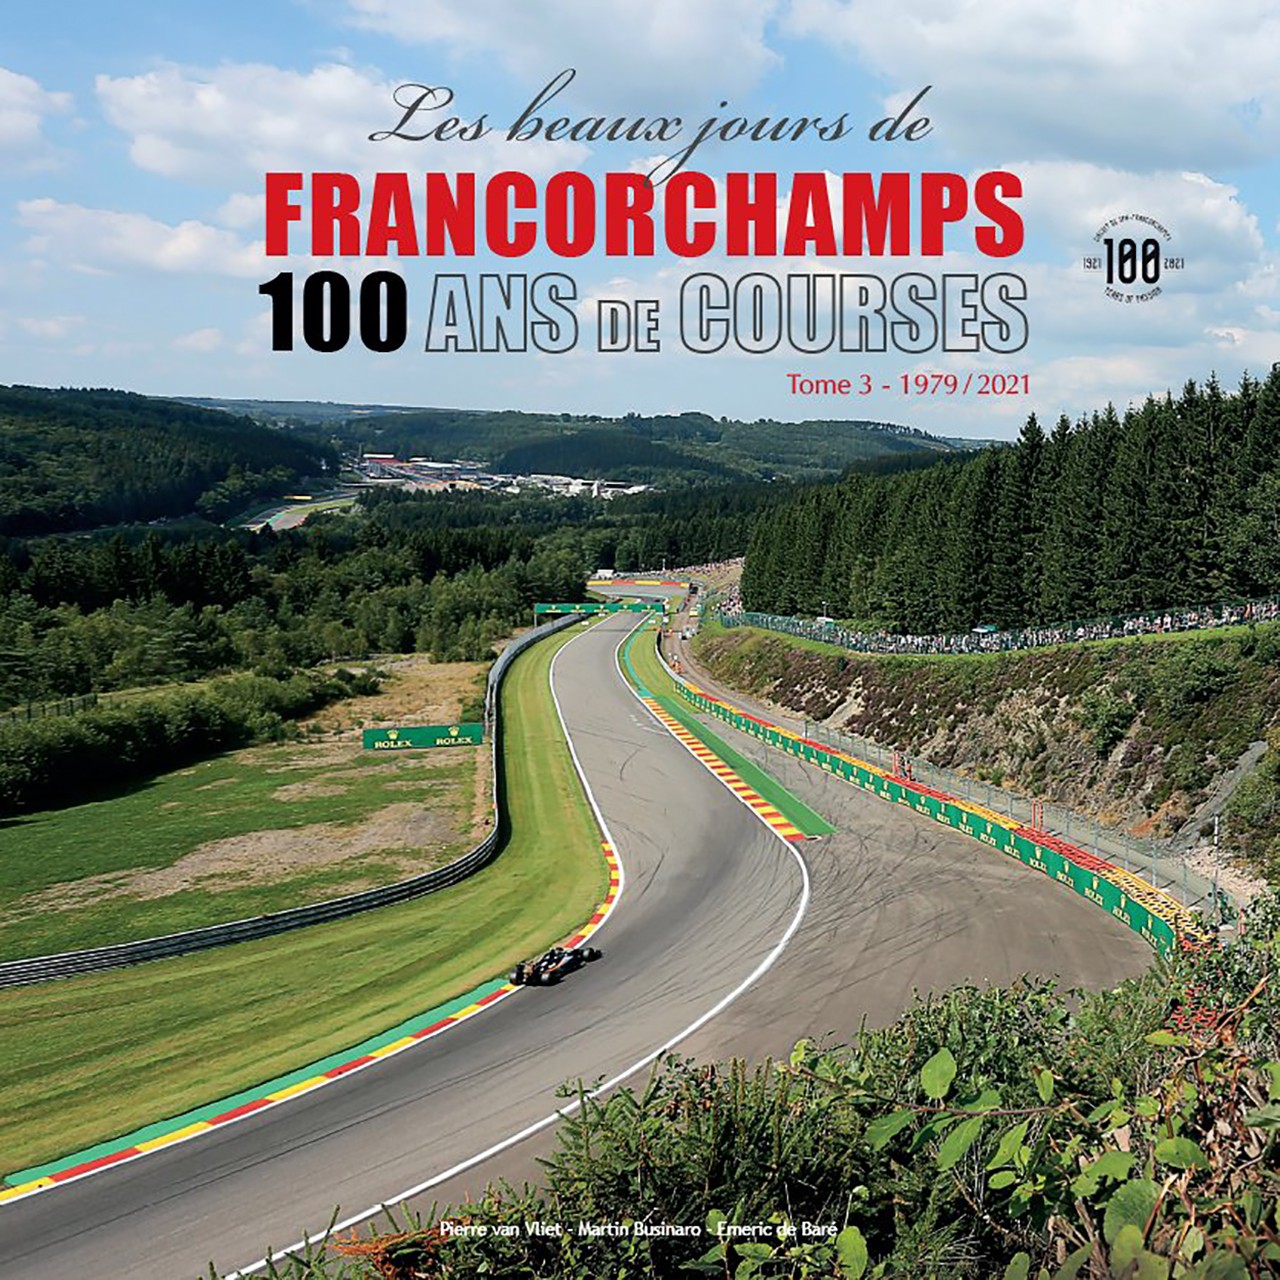 Les beaux jours de Francorchamps 100 ans de course Tome 3 1979 - 2021